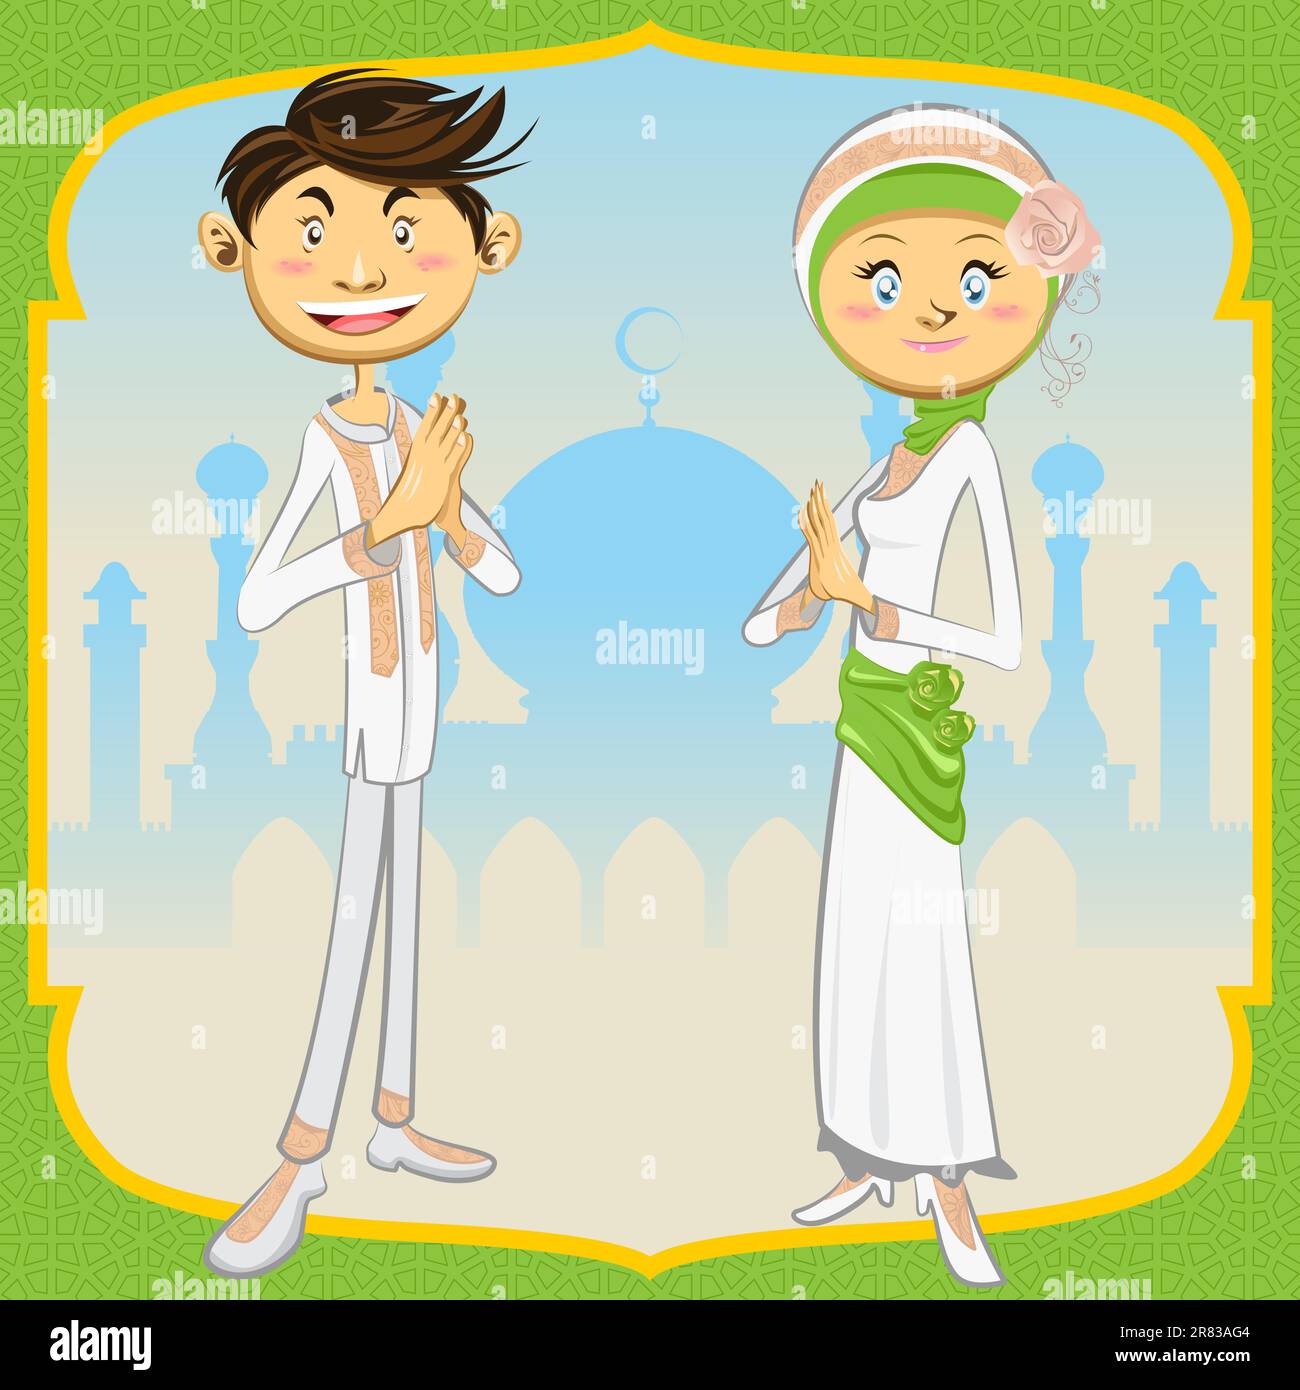 Illustrazione della festa musulmana islamica che celebra il Ramadan Mubarak Illustrazione Vettoriale